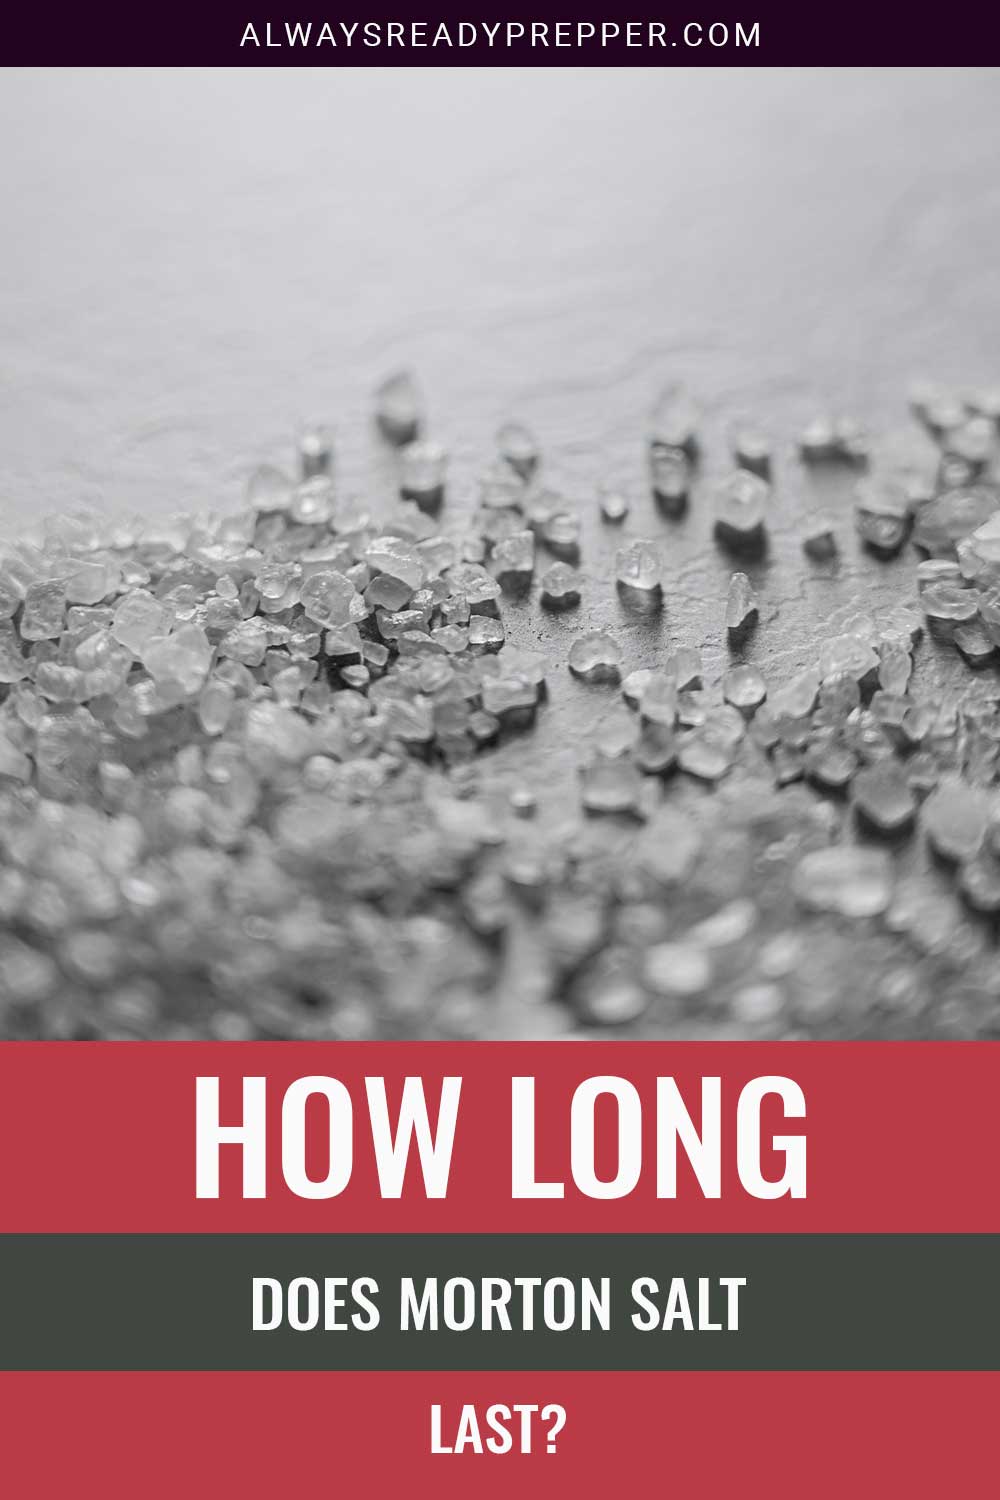 Salt grains on a surface - How Long Does Morton Salt Last?